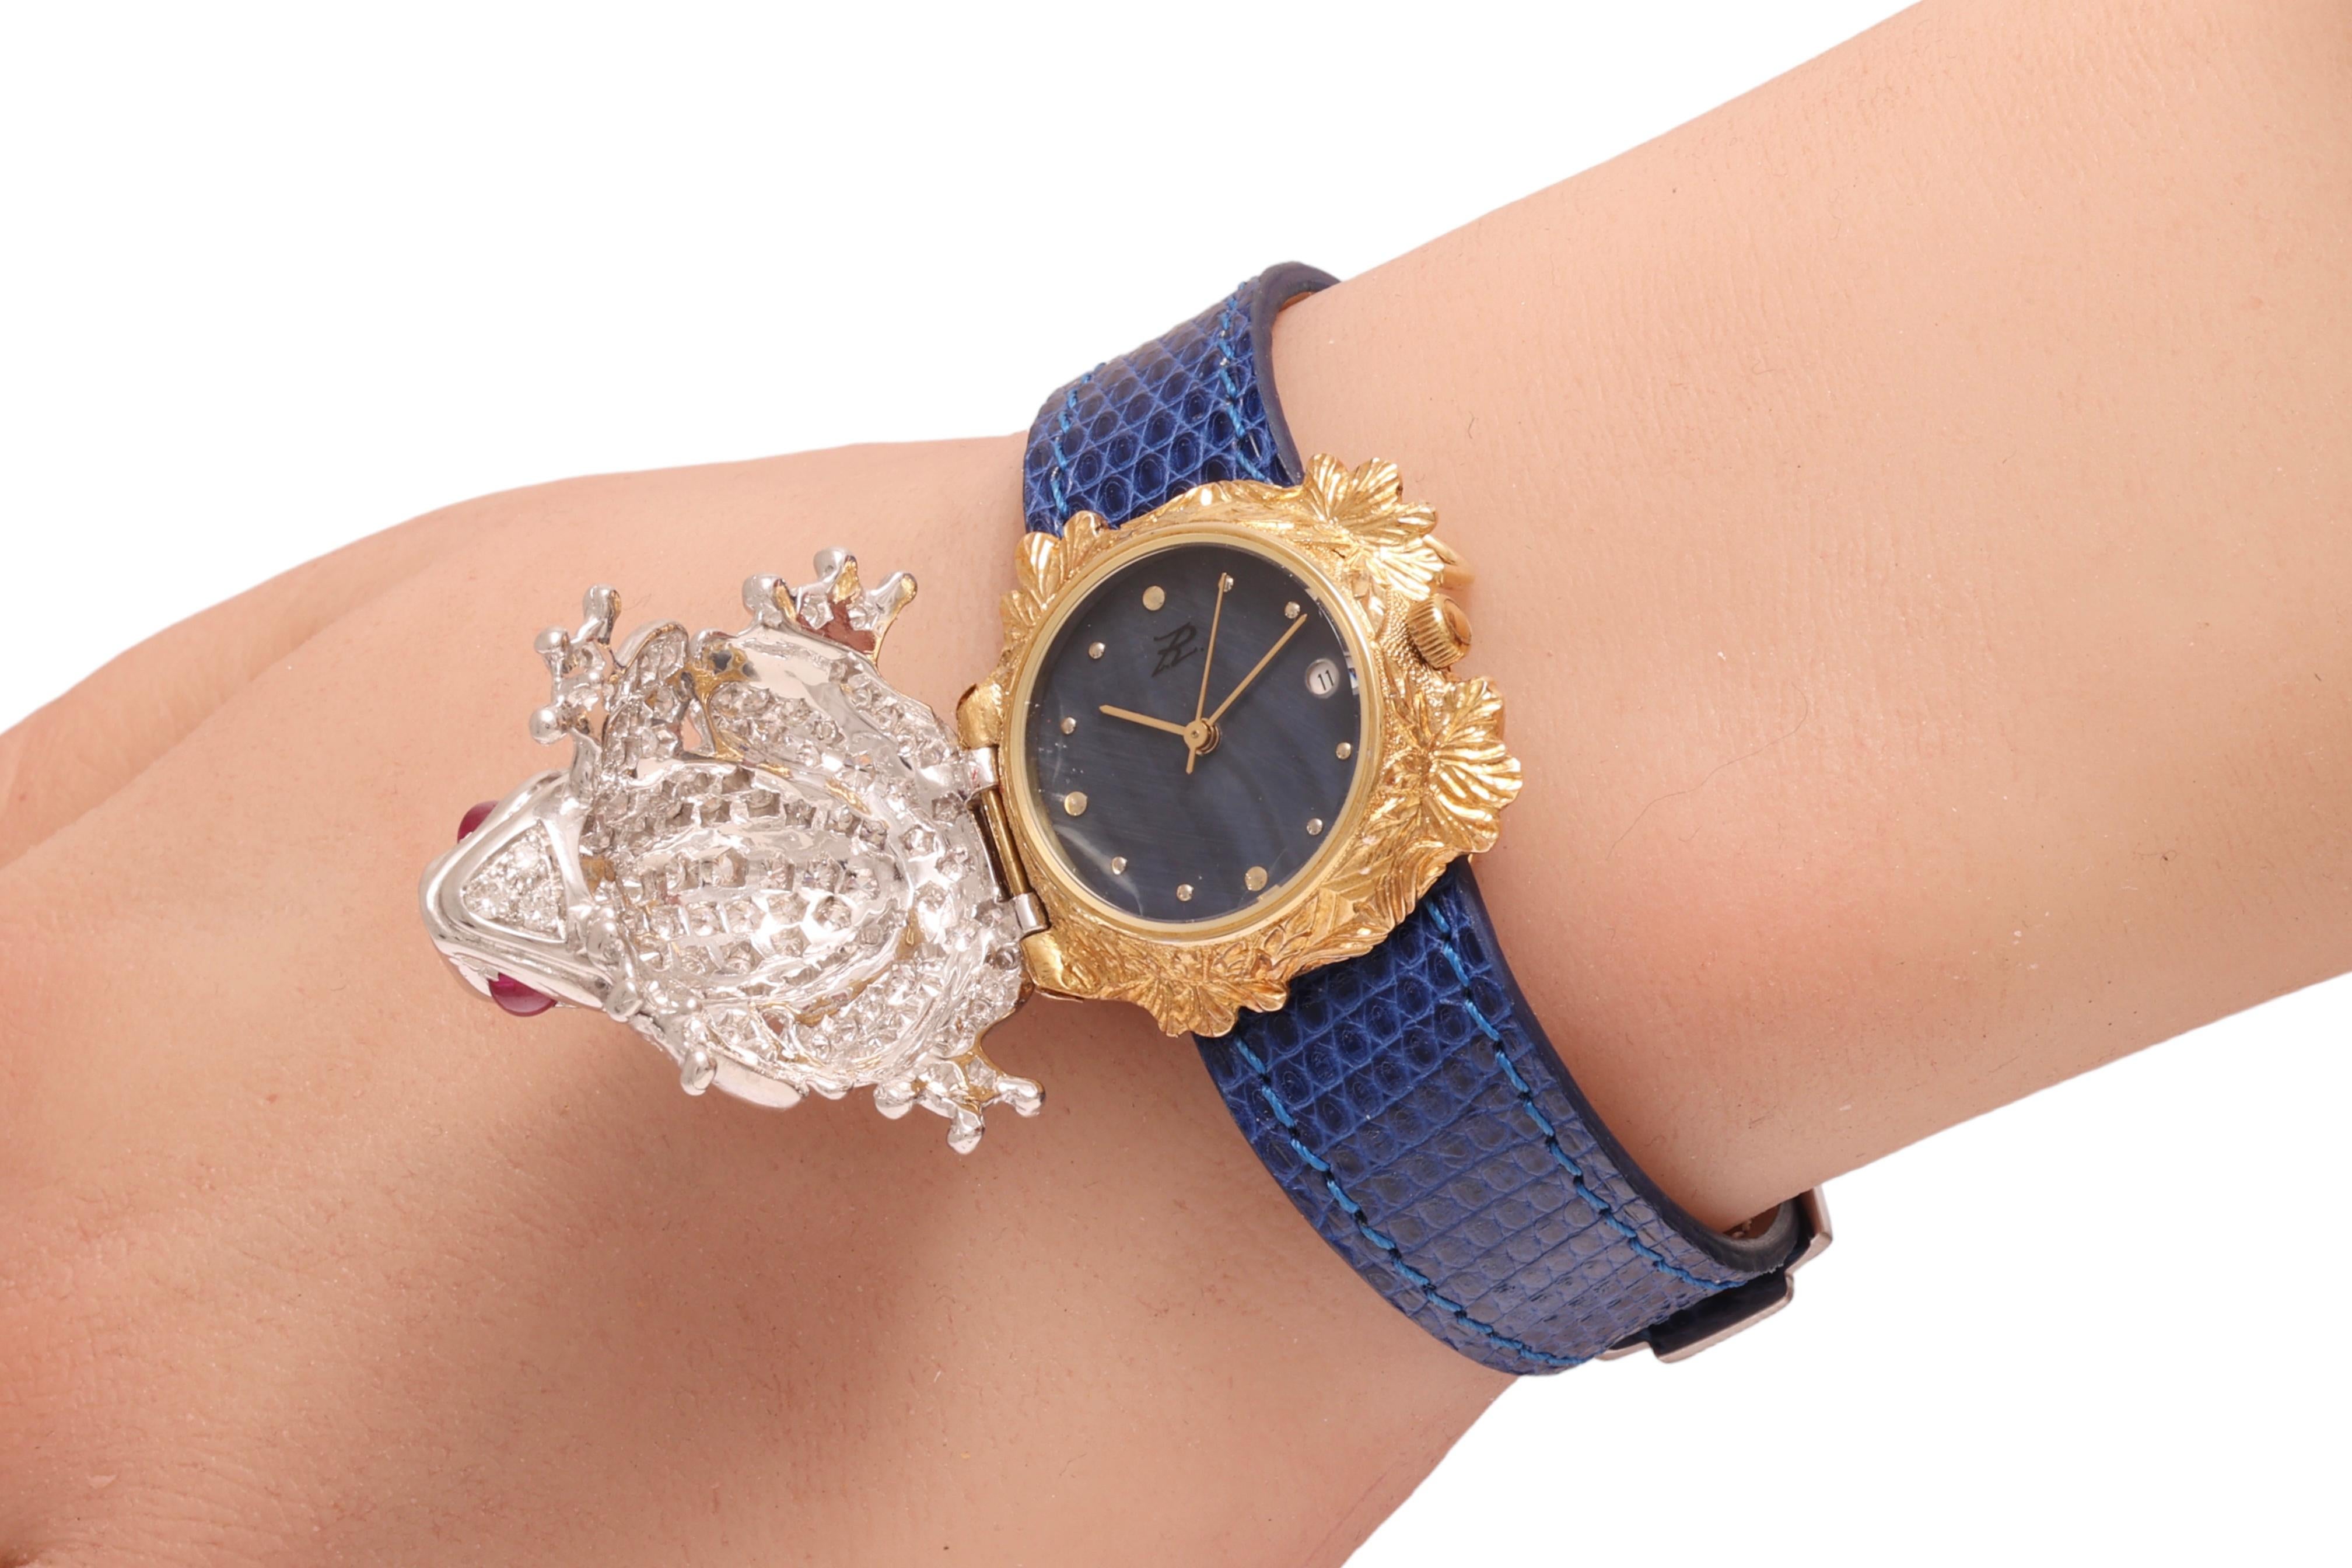 Zannetti Rana Scrigno Jewel Frog Wrist Watch / Bracelet, Diamonds & Ruby's For Sale 5